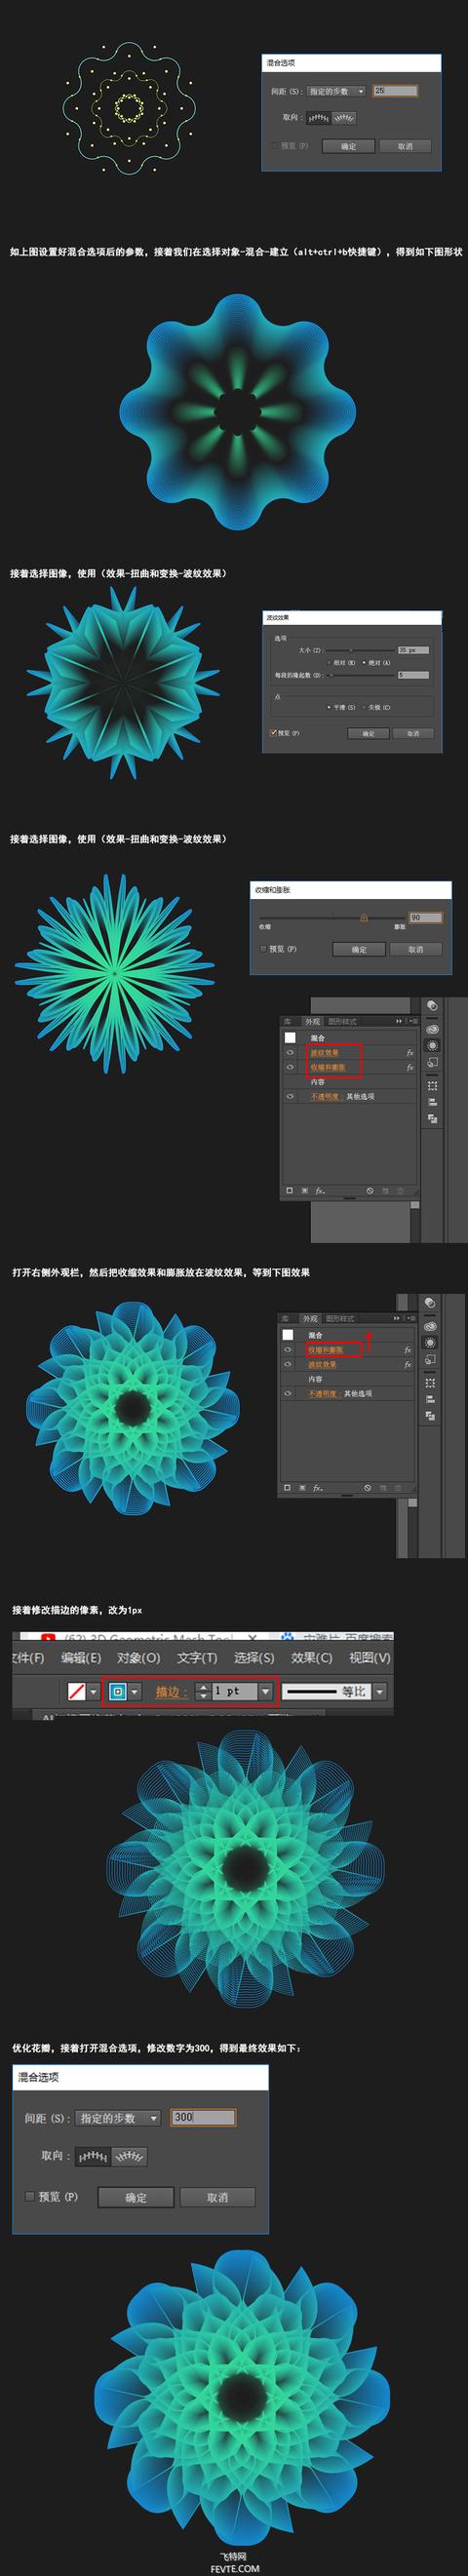 Adobe illustrator打造网格花卉教程